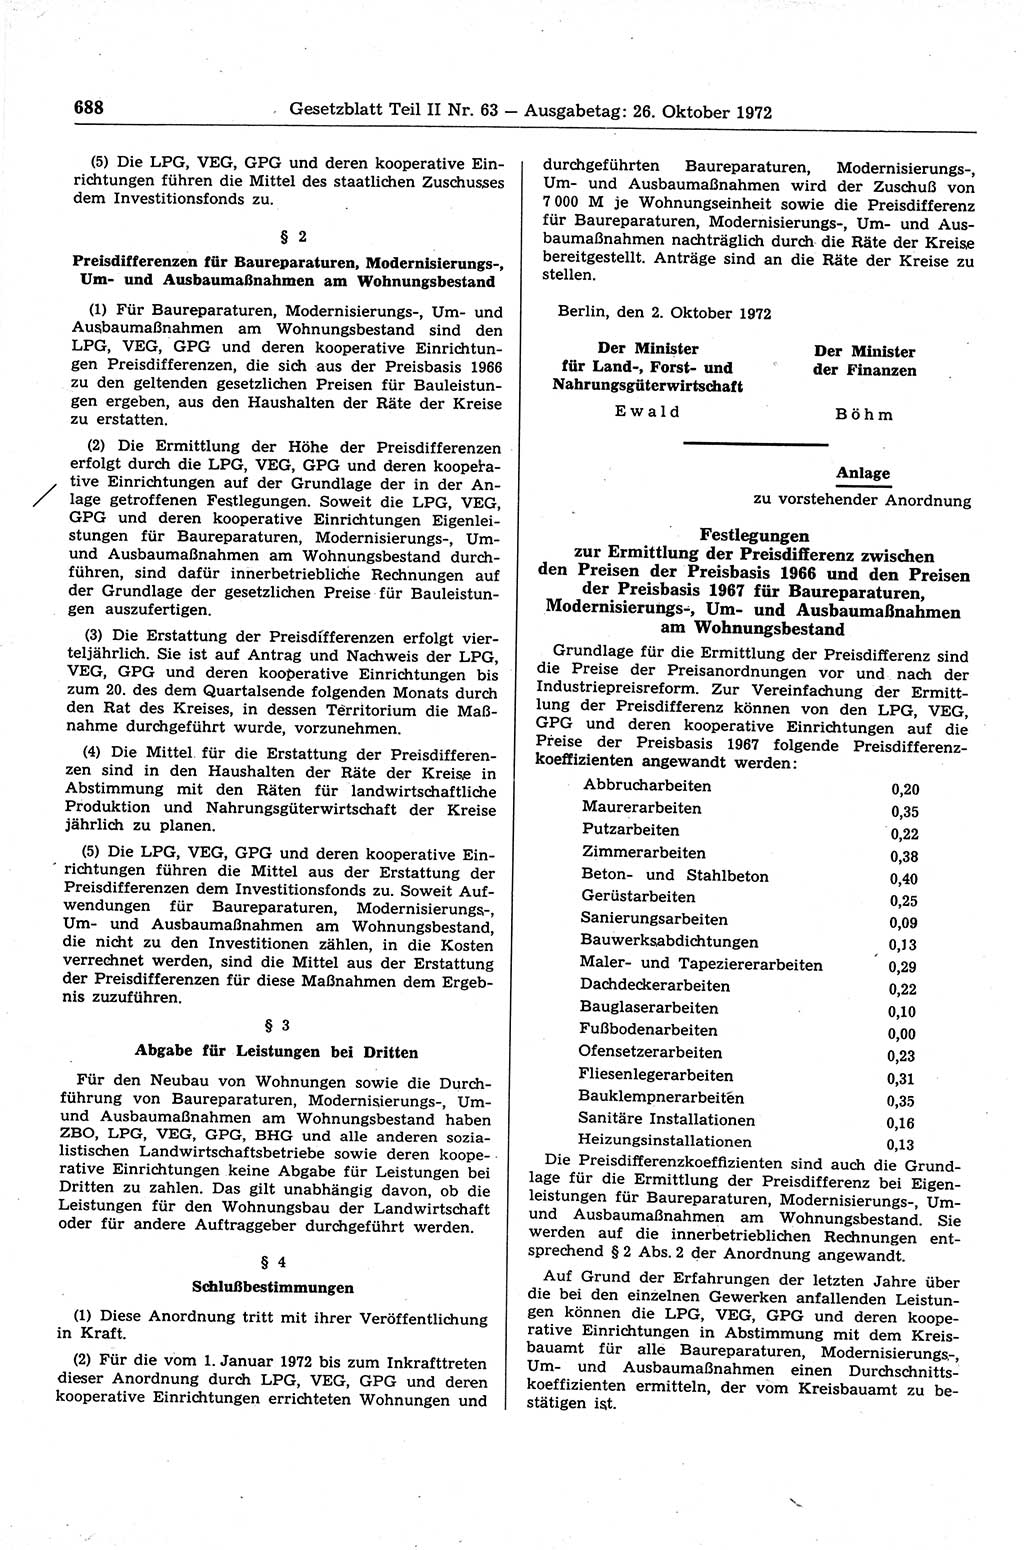 Gesetzblatt (GBl.) der Deutschen Demokratischen Republik (DDR) Teil ⅠⅠ 1972, Seite 688 (GBl. DDR ⅠⅠ 1972, S. 688)